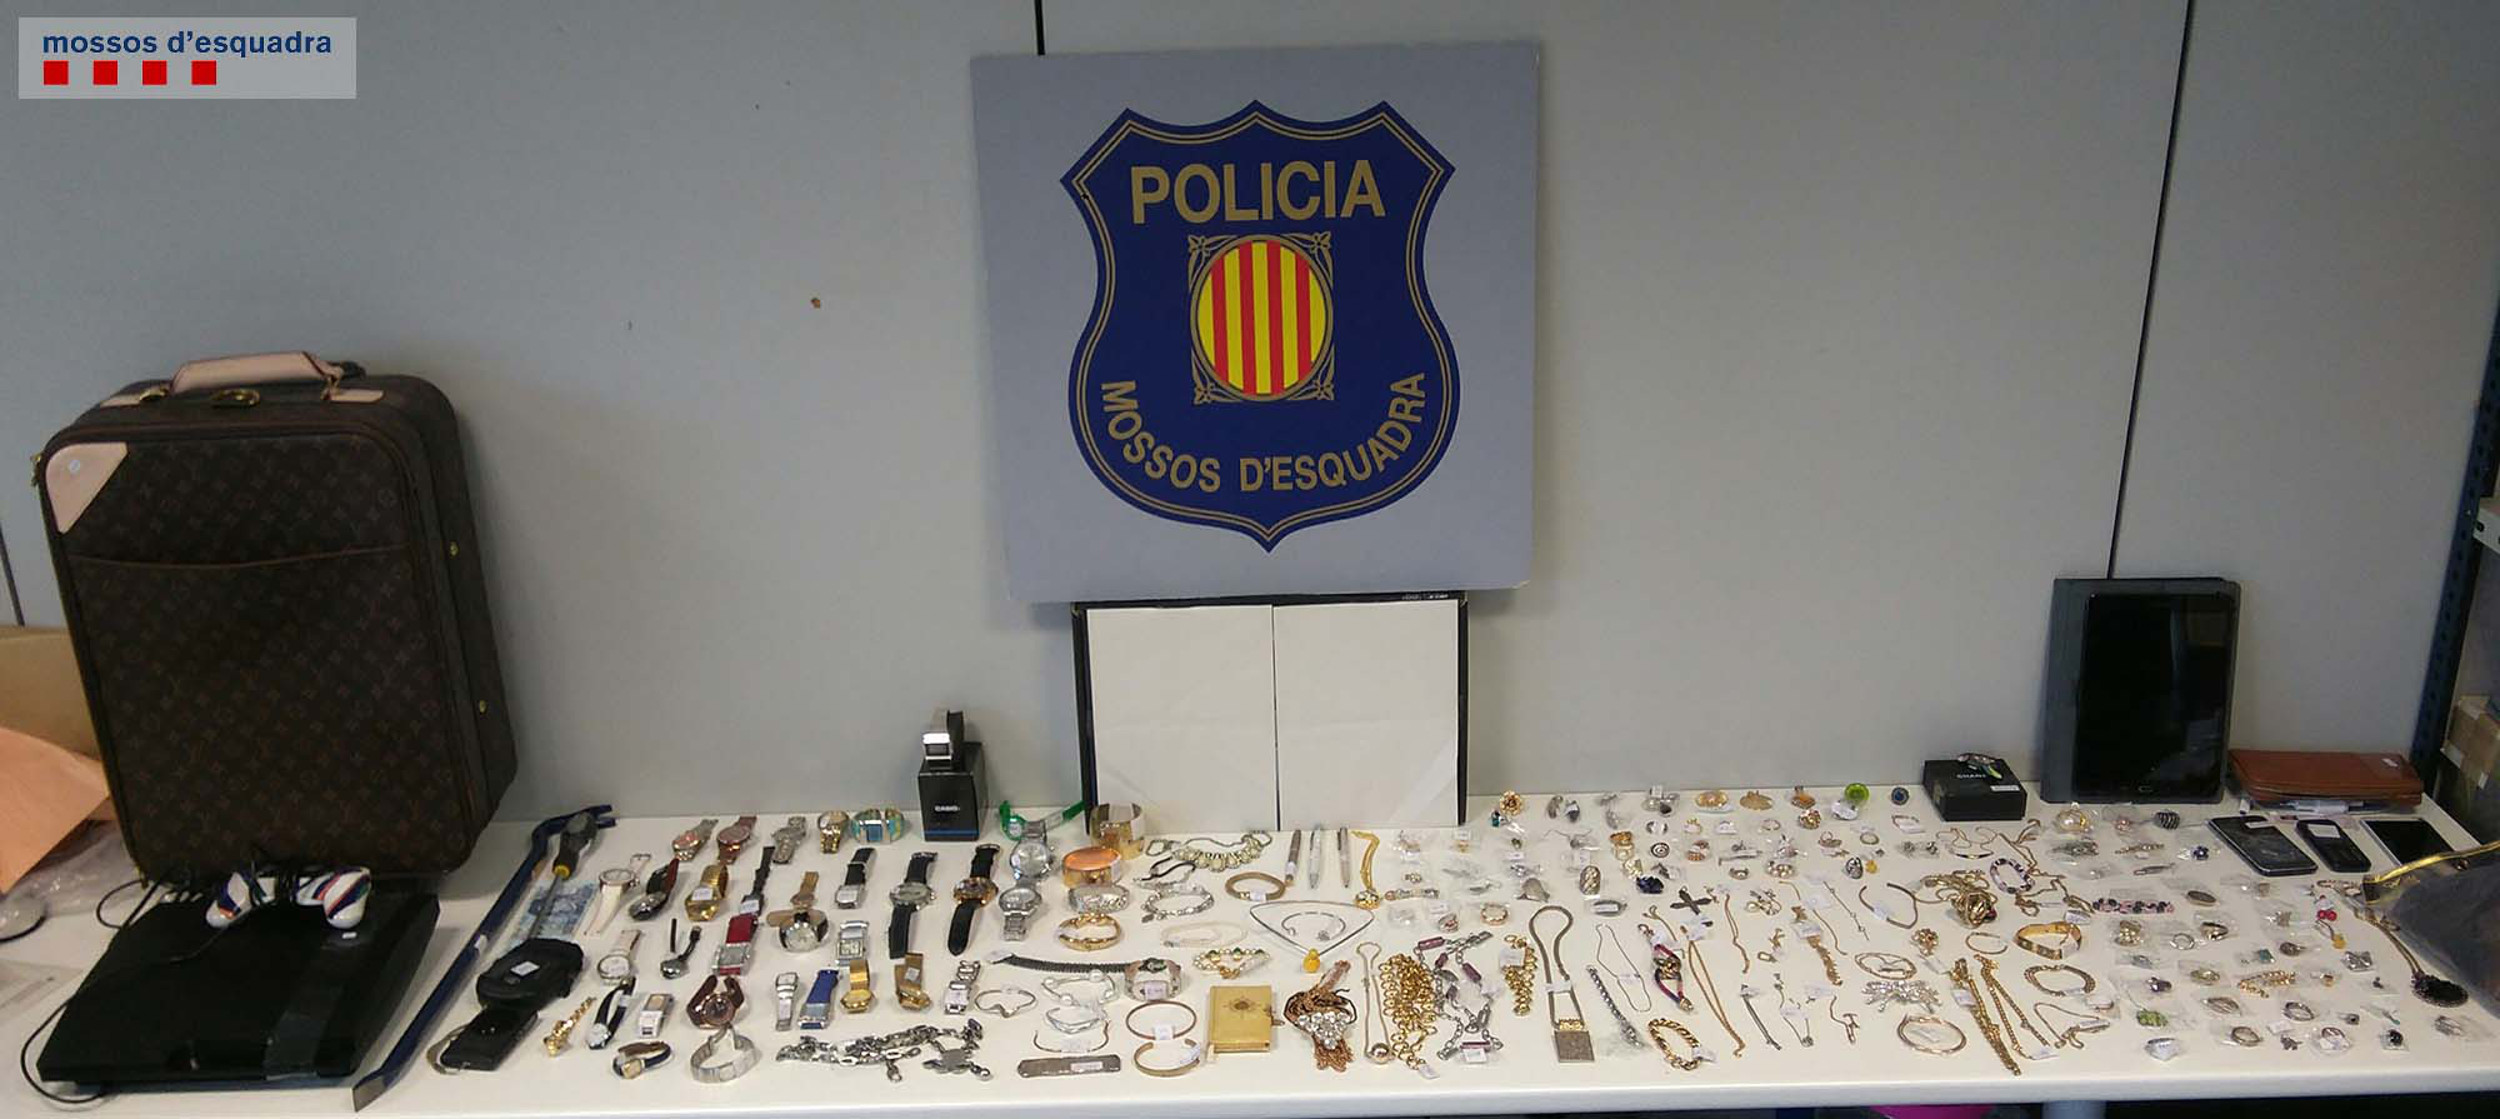 Ingressen a presó dos homes especialitzats en robatoris a cases d'urbanitzacions d'arreu de Catalunya